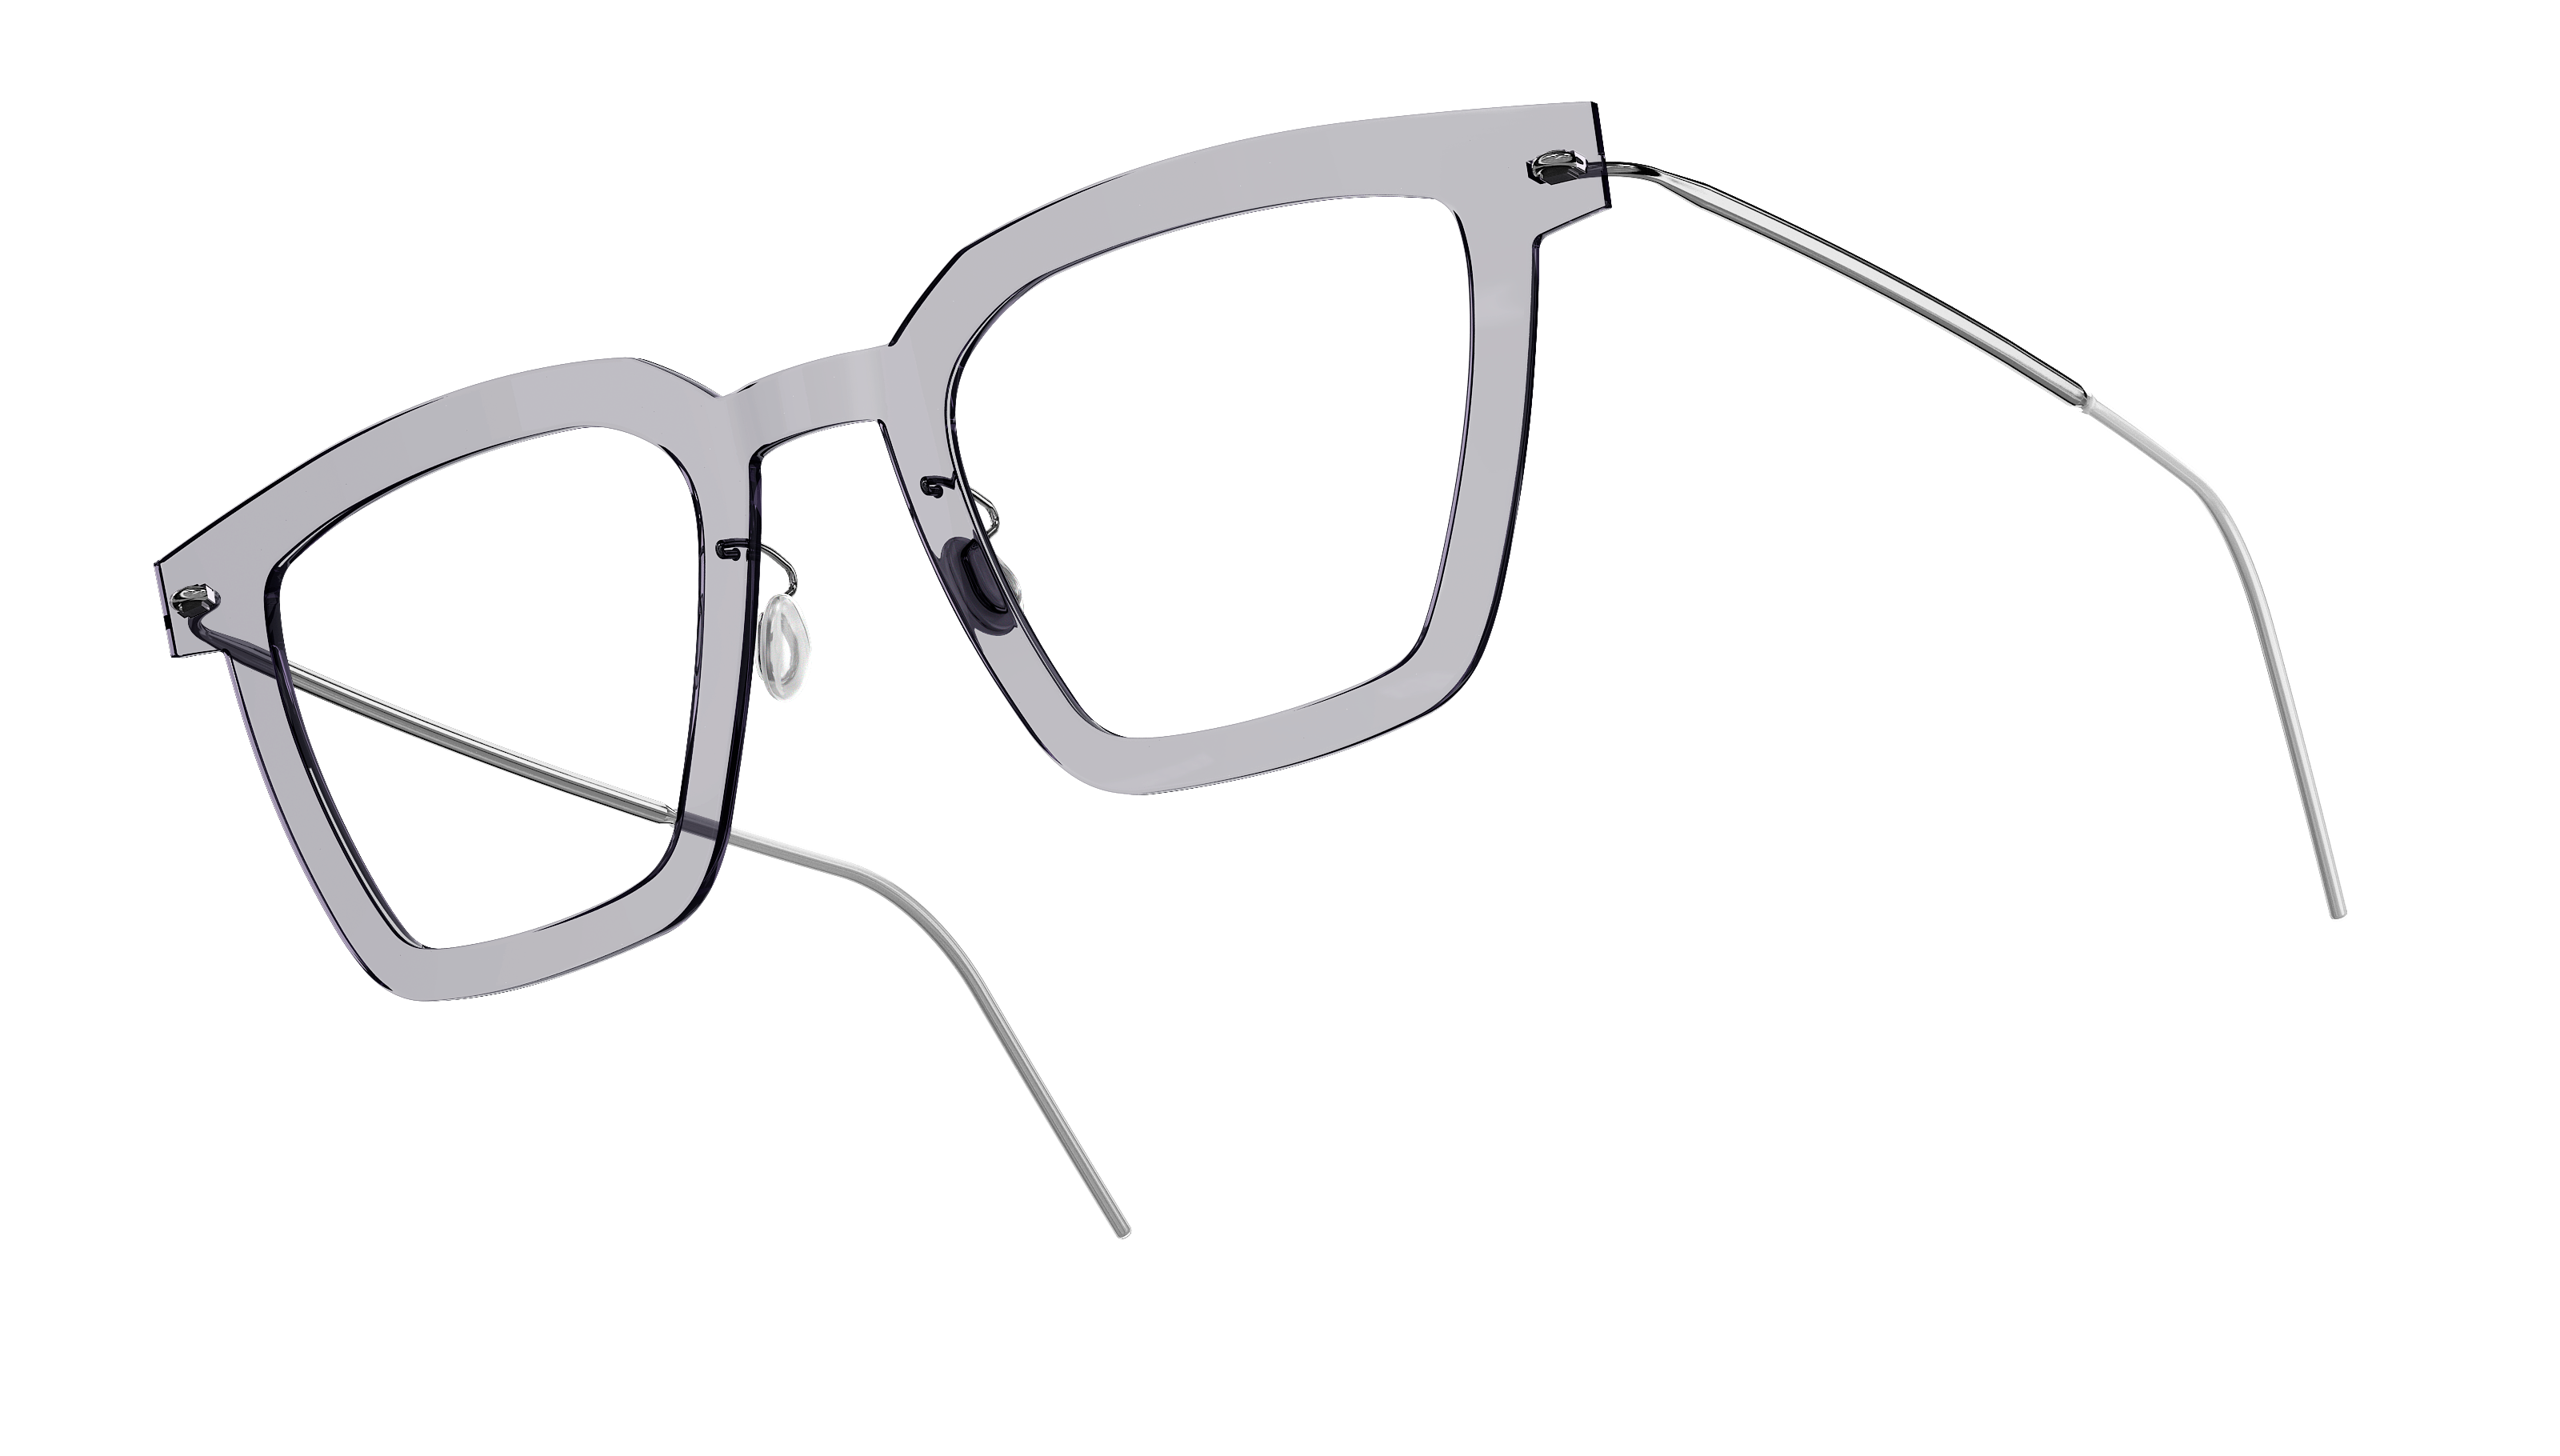 LINDBERG n.o.w. titanium, Modell 6585 C07, Brille mit transparenter Fassung und Bügeln in Silber P10